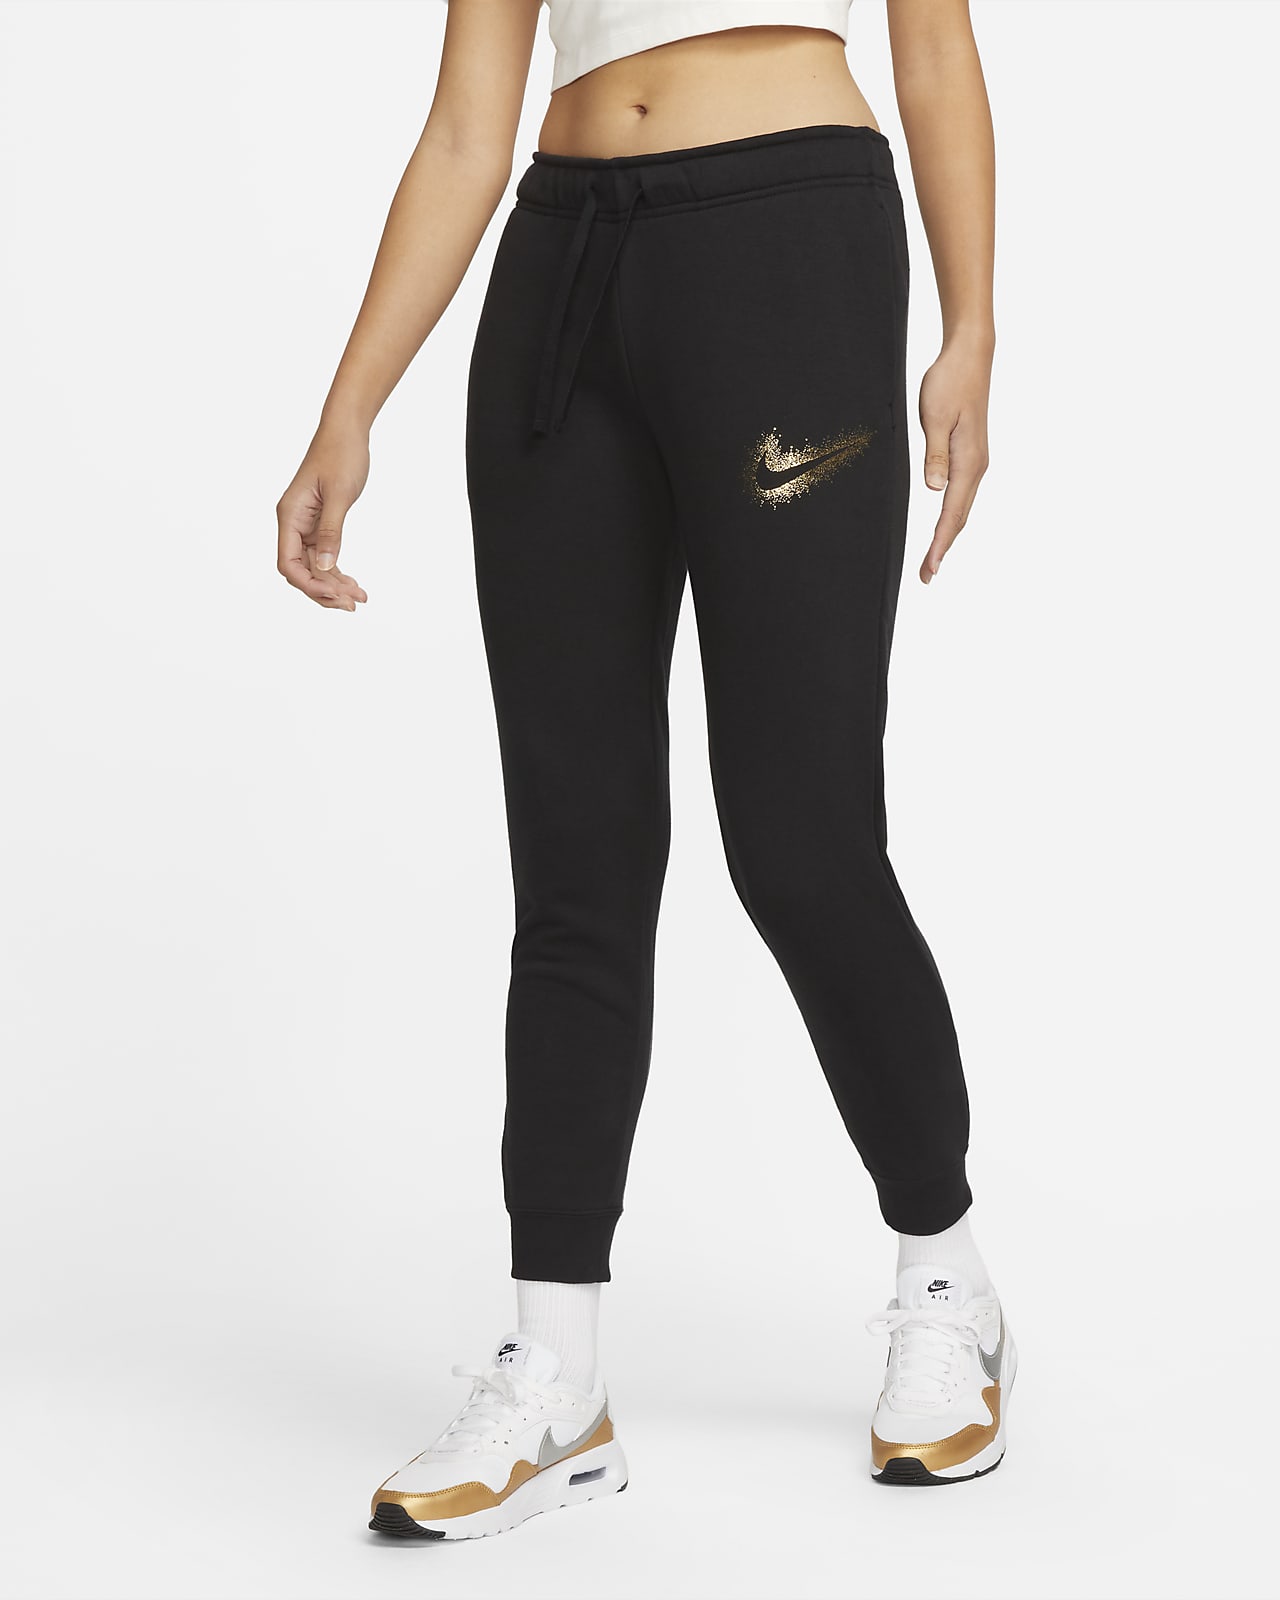 Nike Sportswear Women's Easy Joggers. Nike VN